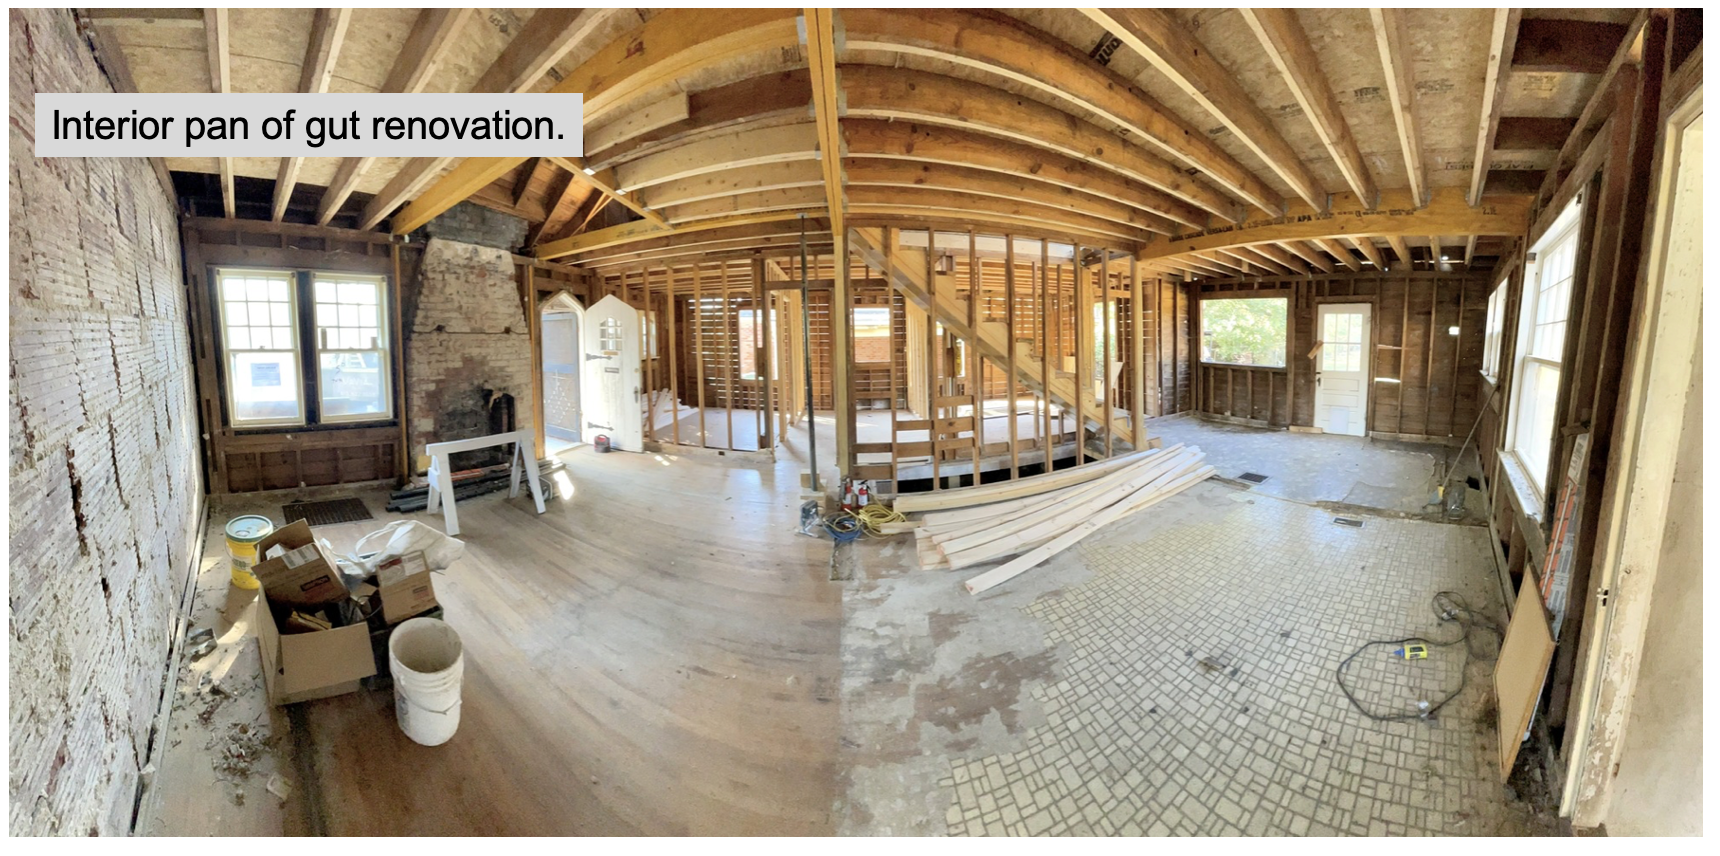 Renovation progress 2 - Interior guts